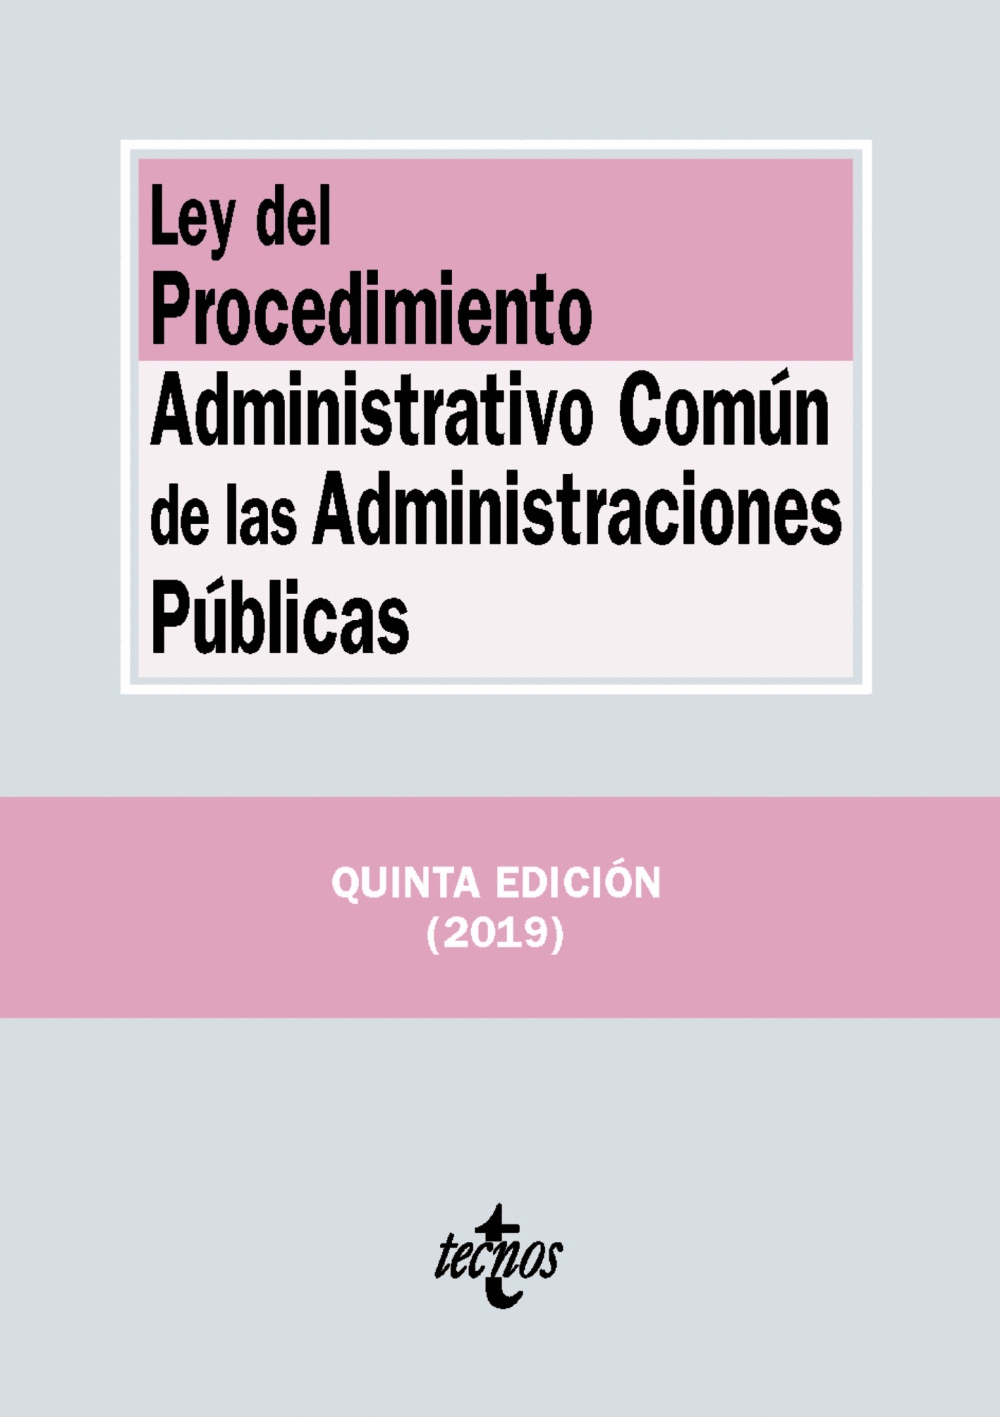 LEY DEL PROCEDIMIENTO ADMINISTRATIVO COMÚN DE LAS ADMINISTRACIONES PÚBLICAS 2019